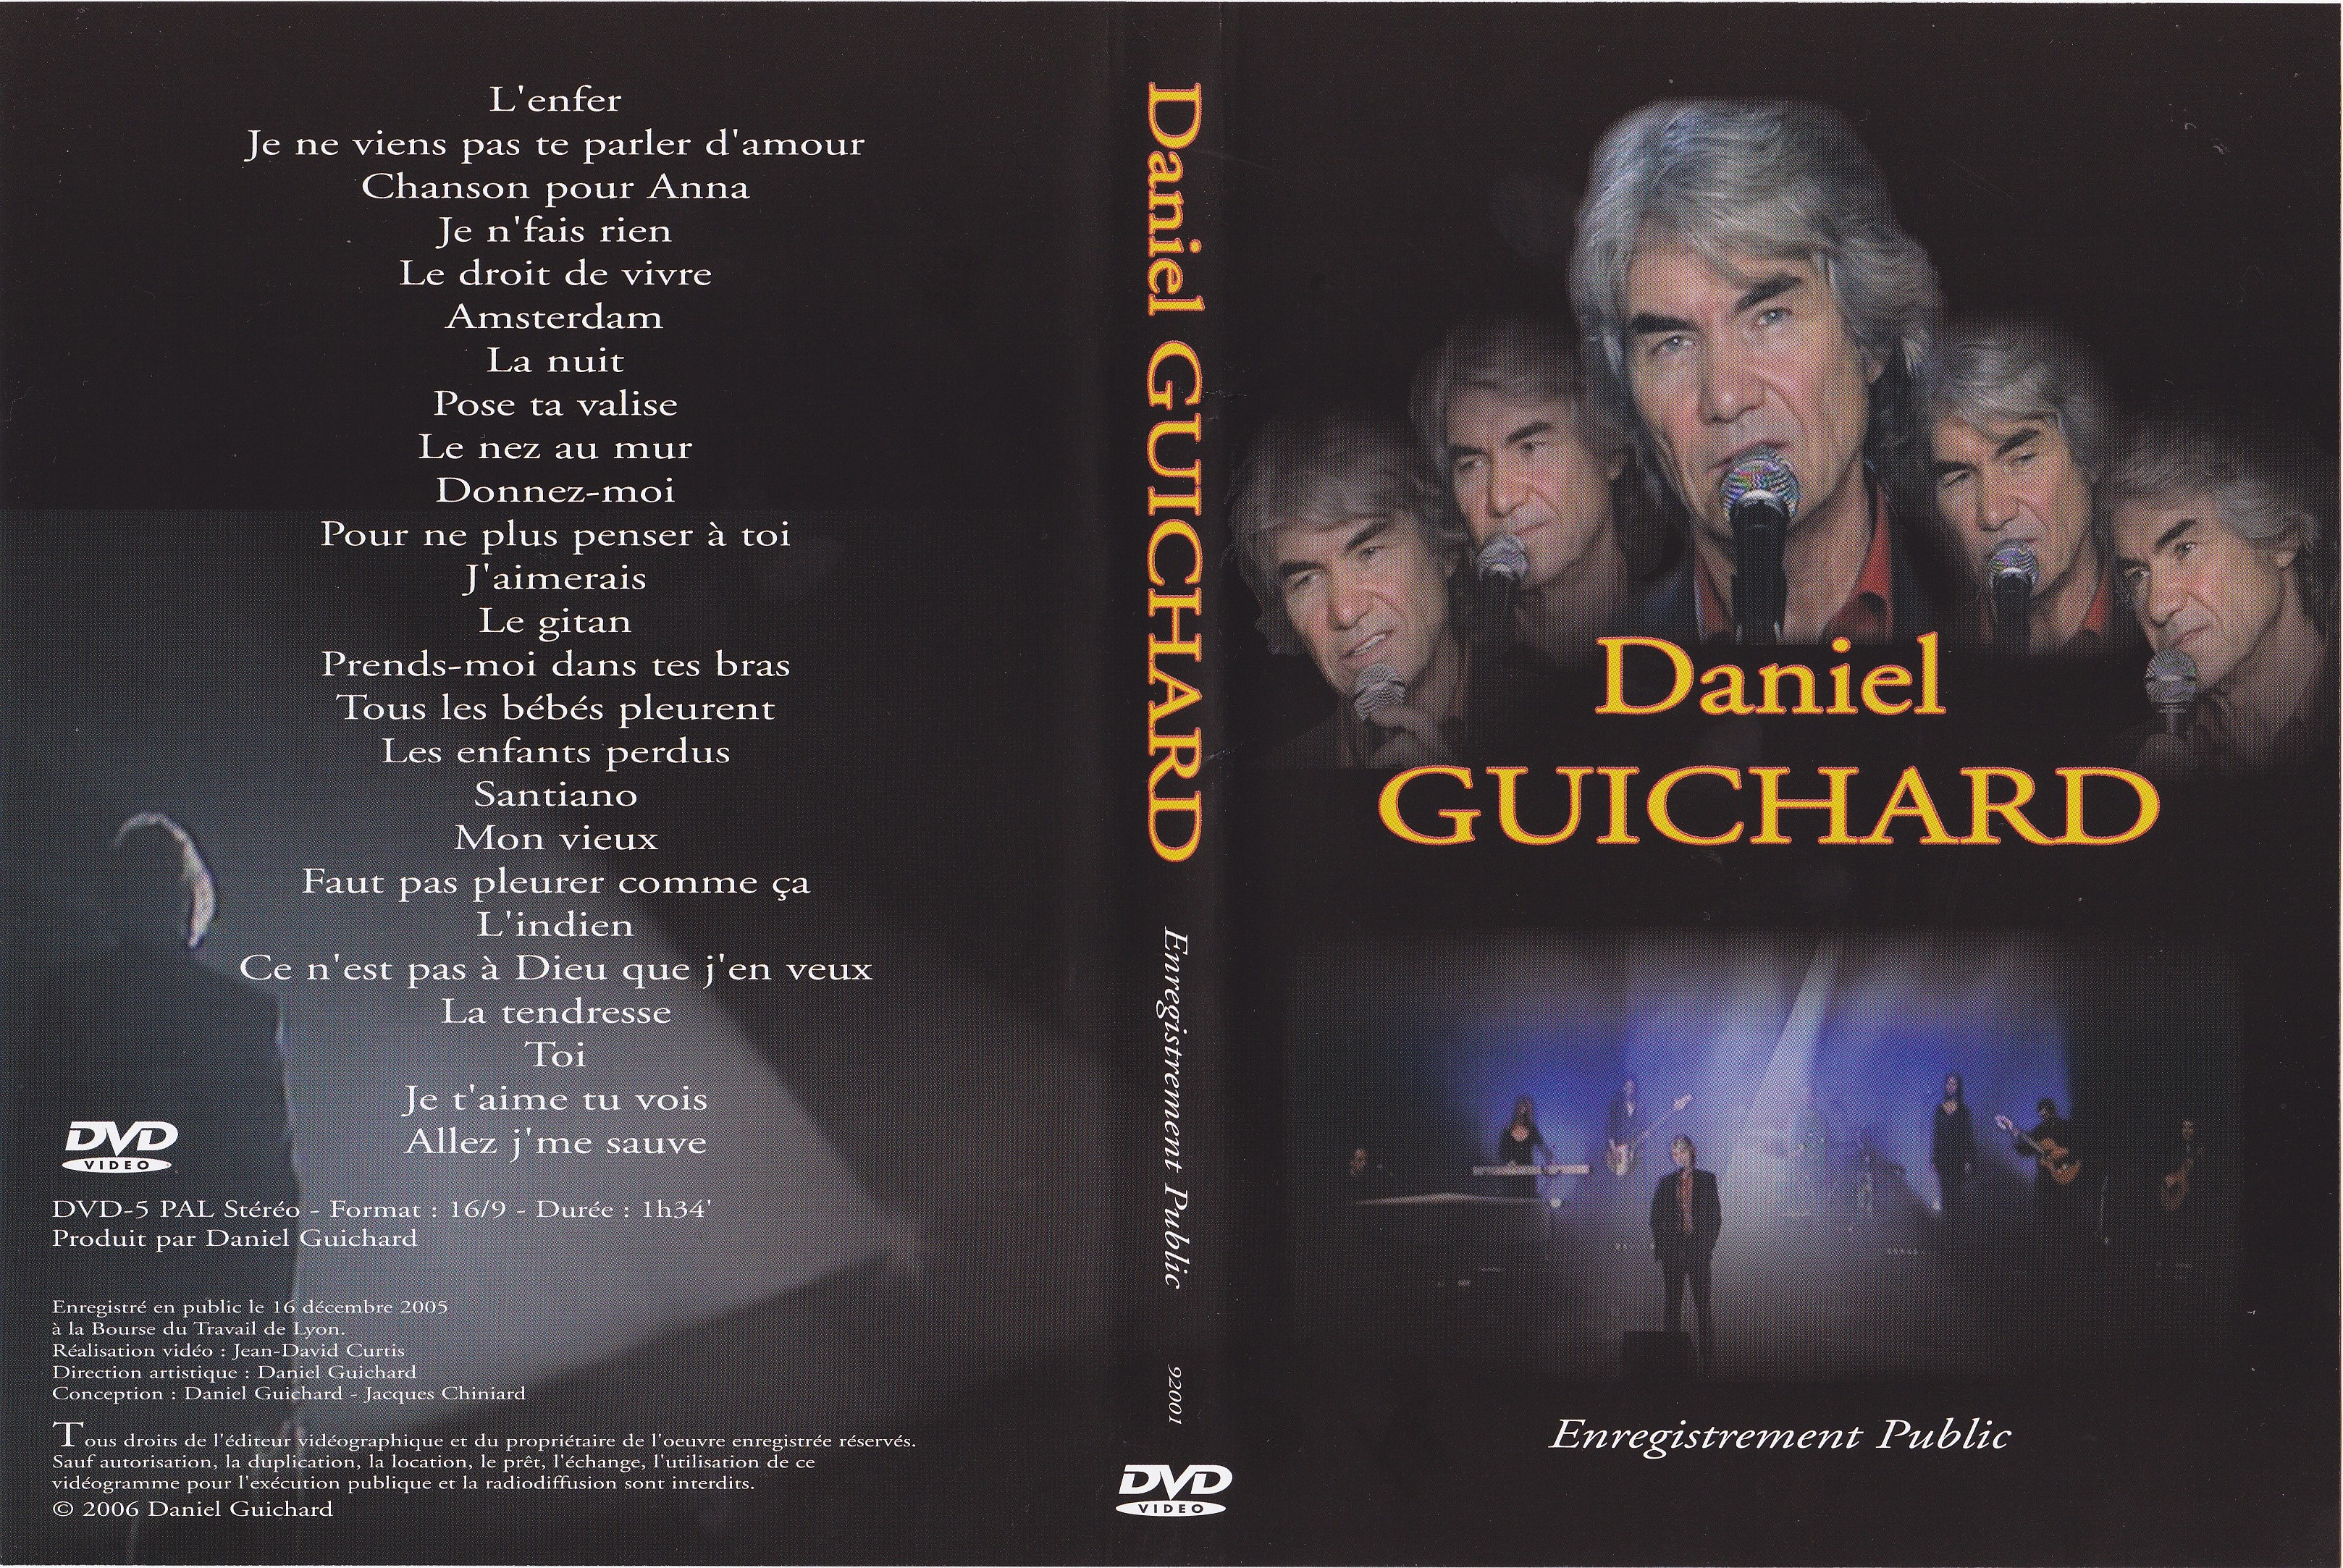 Jaquette DVD Daniel Guichard - Enregistrement Public